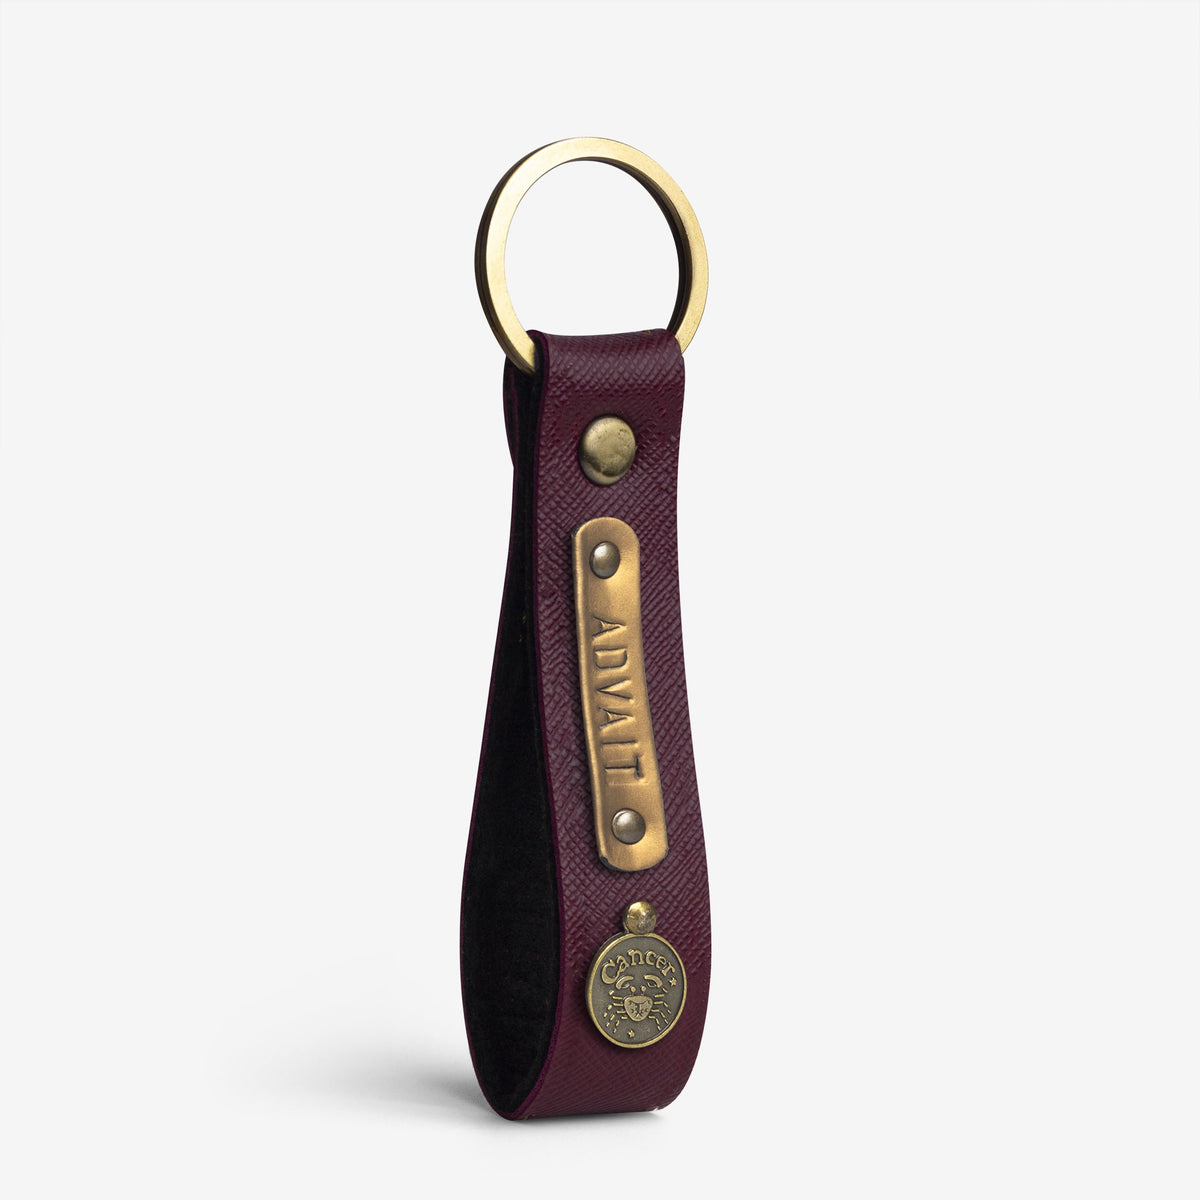 The Messy Corner Keychain Personalized Keychain - Wine